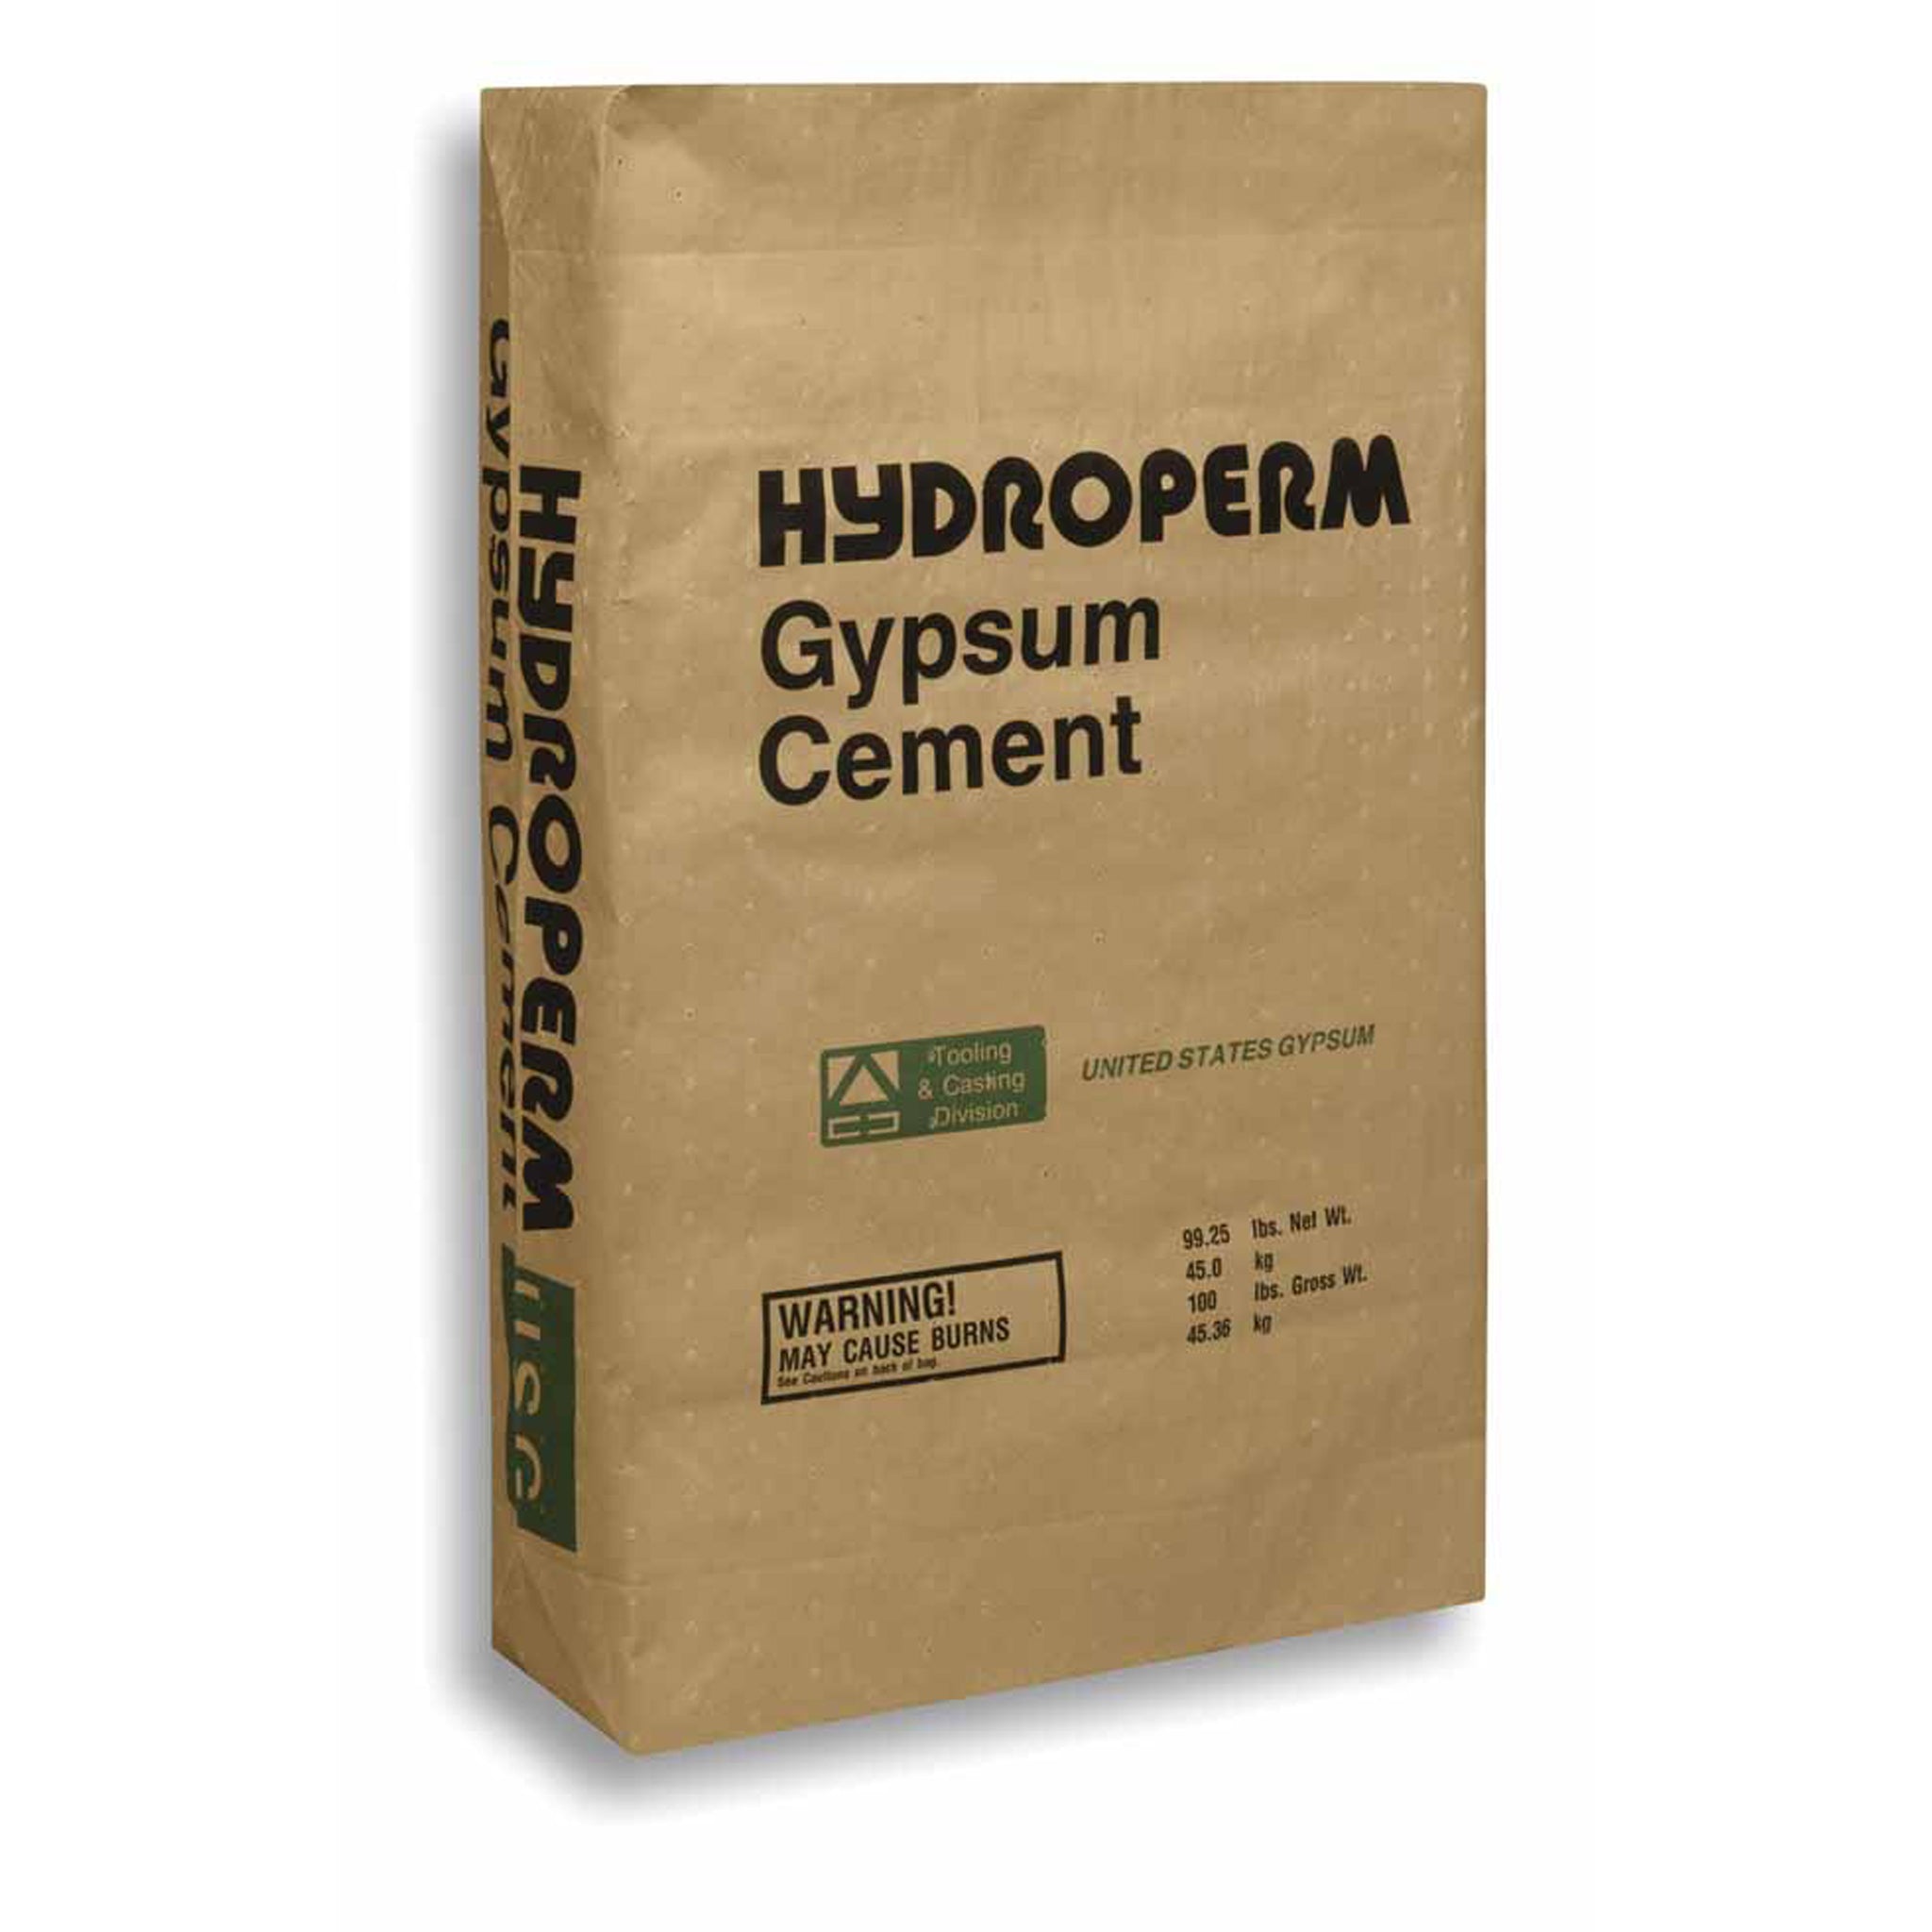 Hydroperm